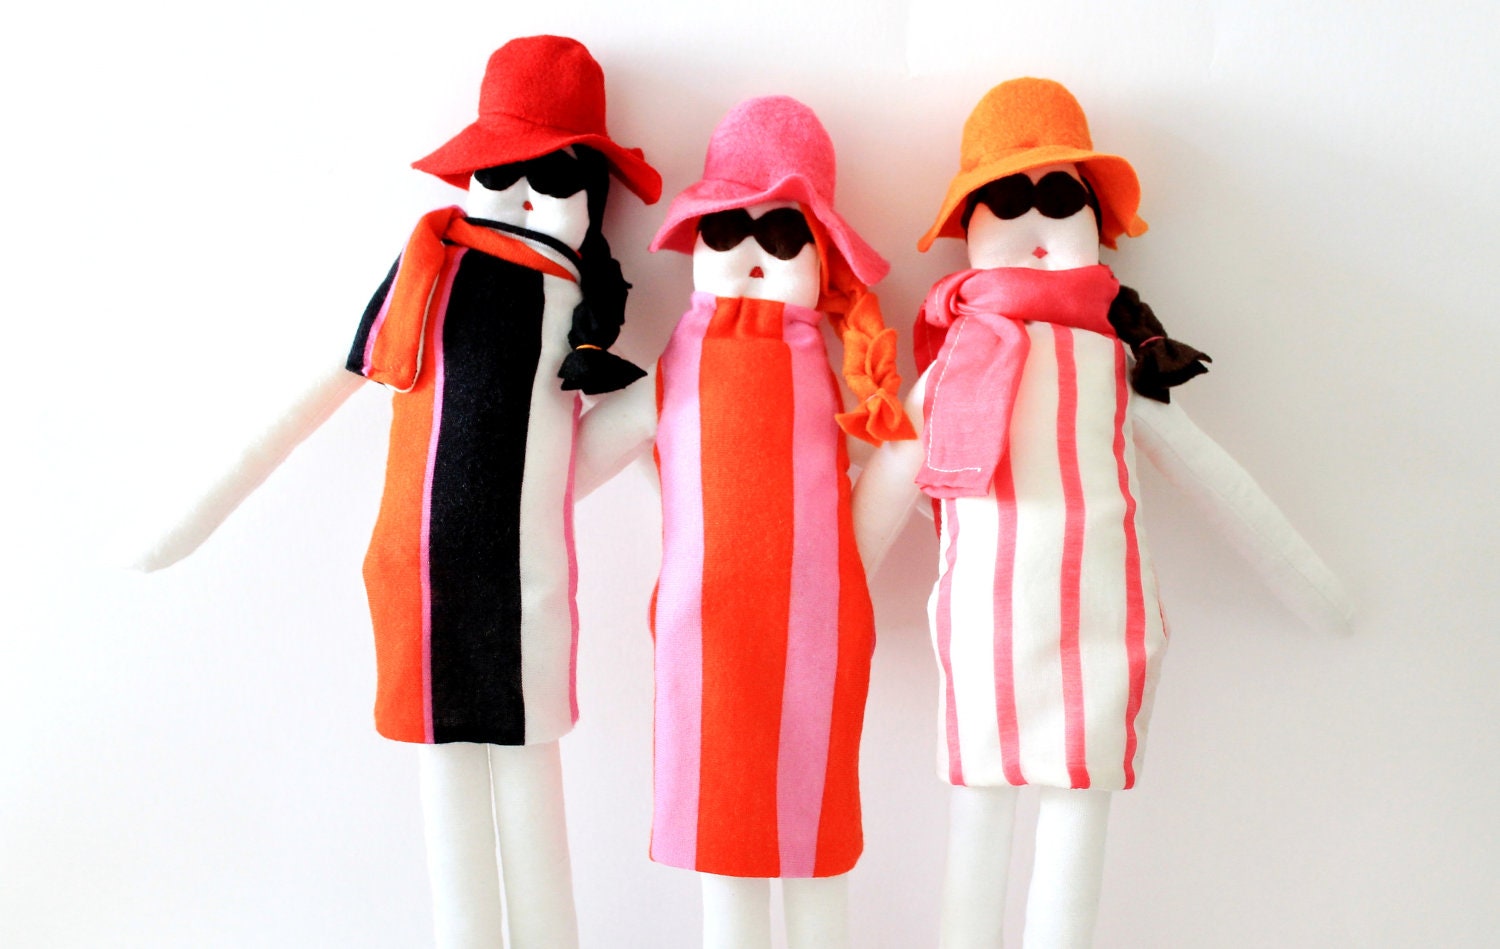 la dolce vita - Custom handmade fabric doll by Fulana Beltrana Sicrana